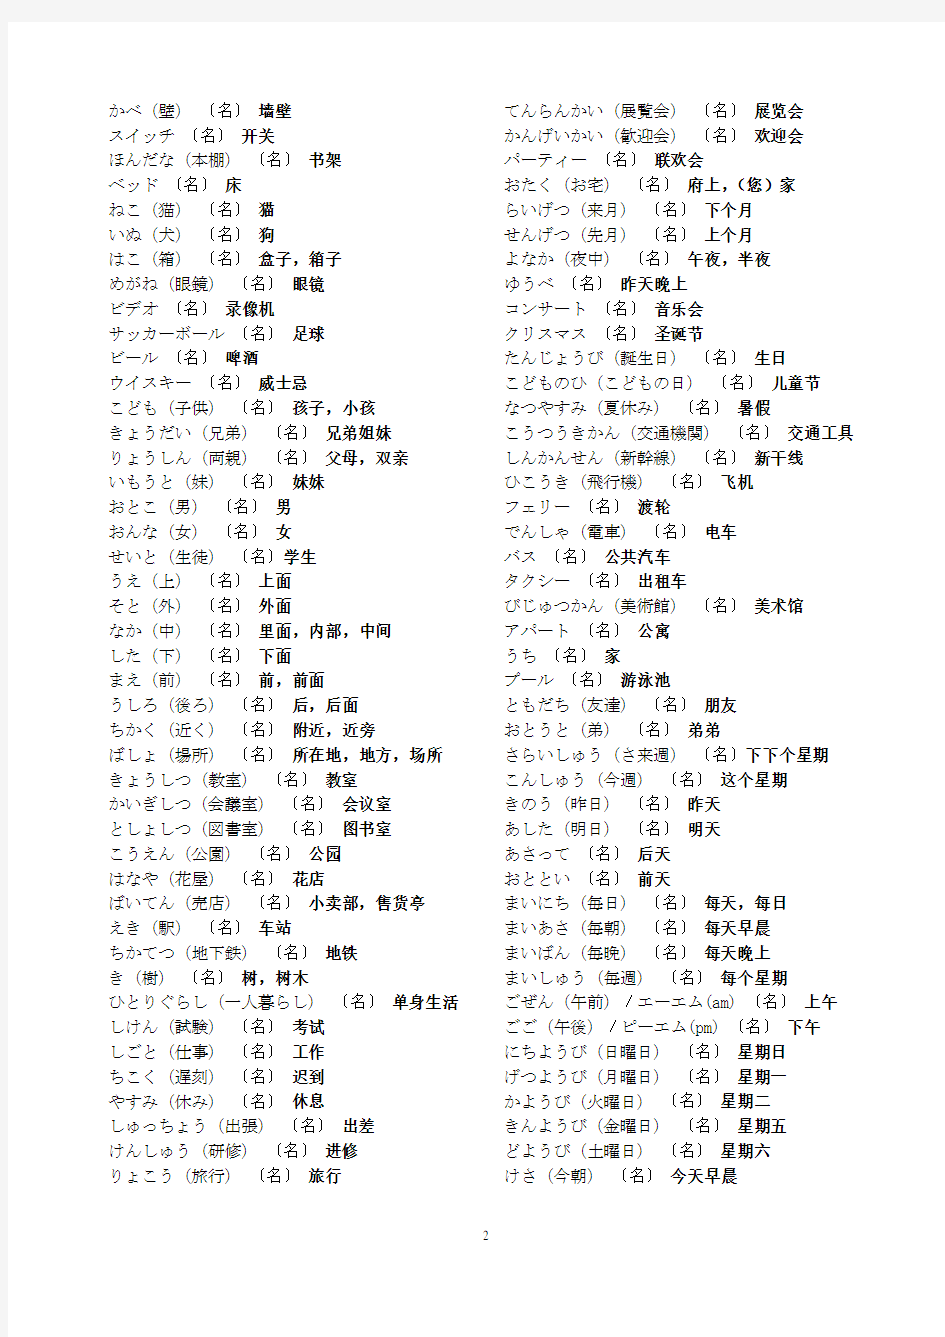 日语名词表